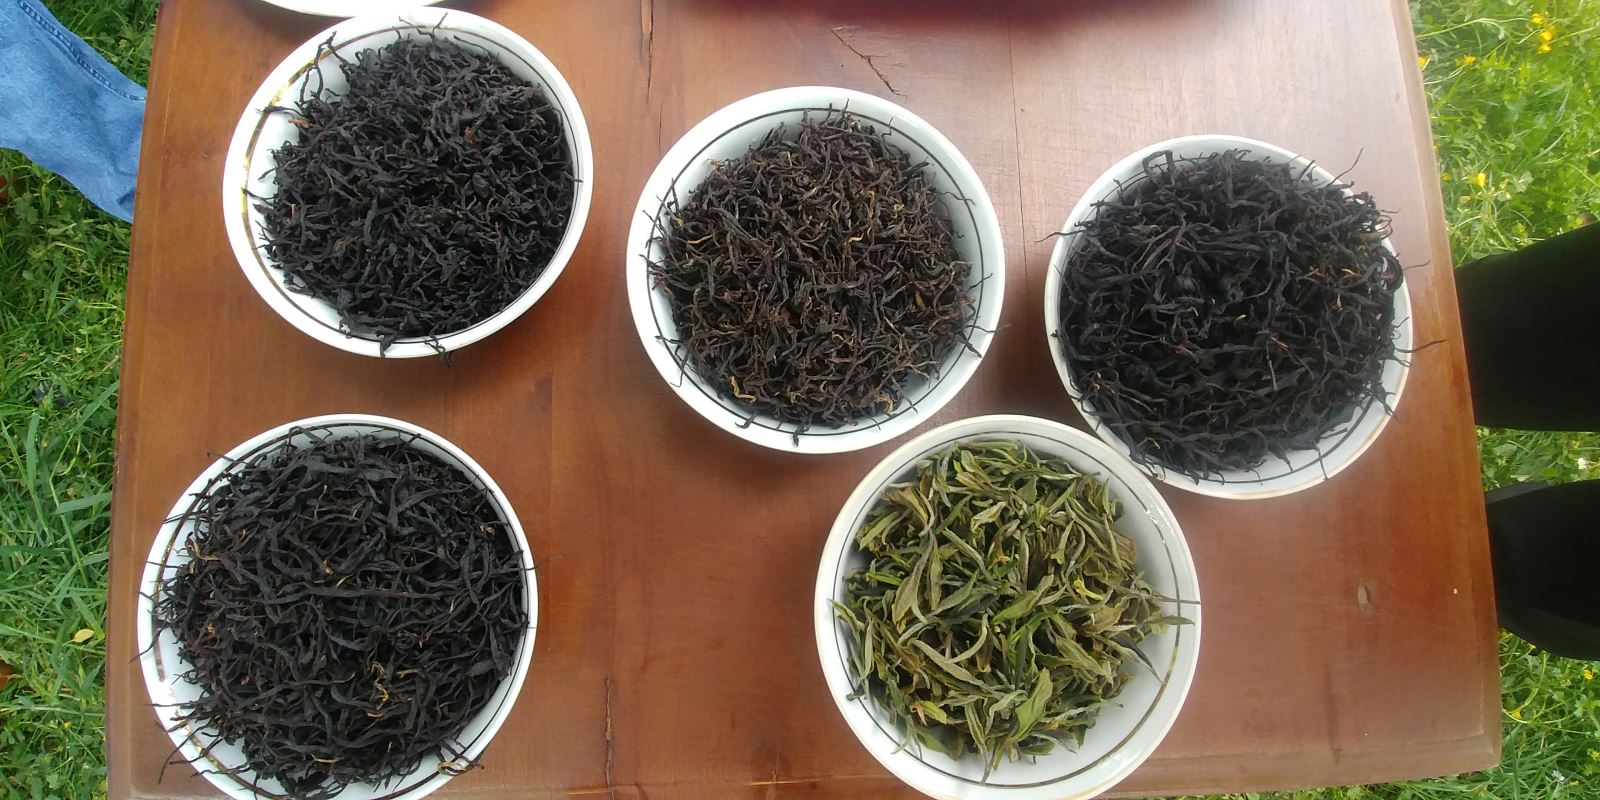 čaje z oblasti Chiatura (černé, bílé a borůvkový)